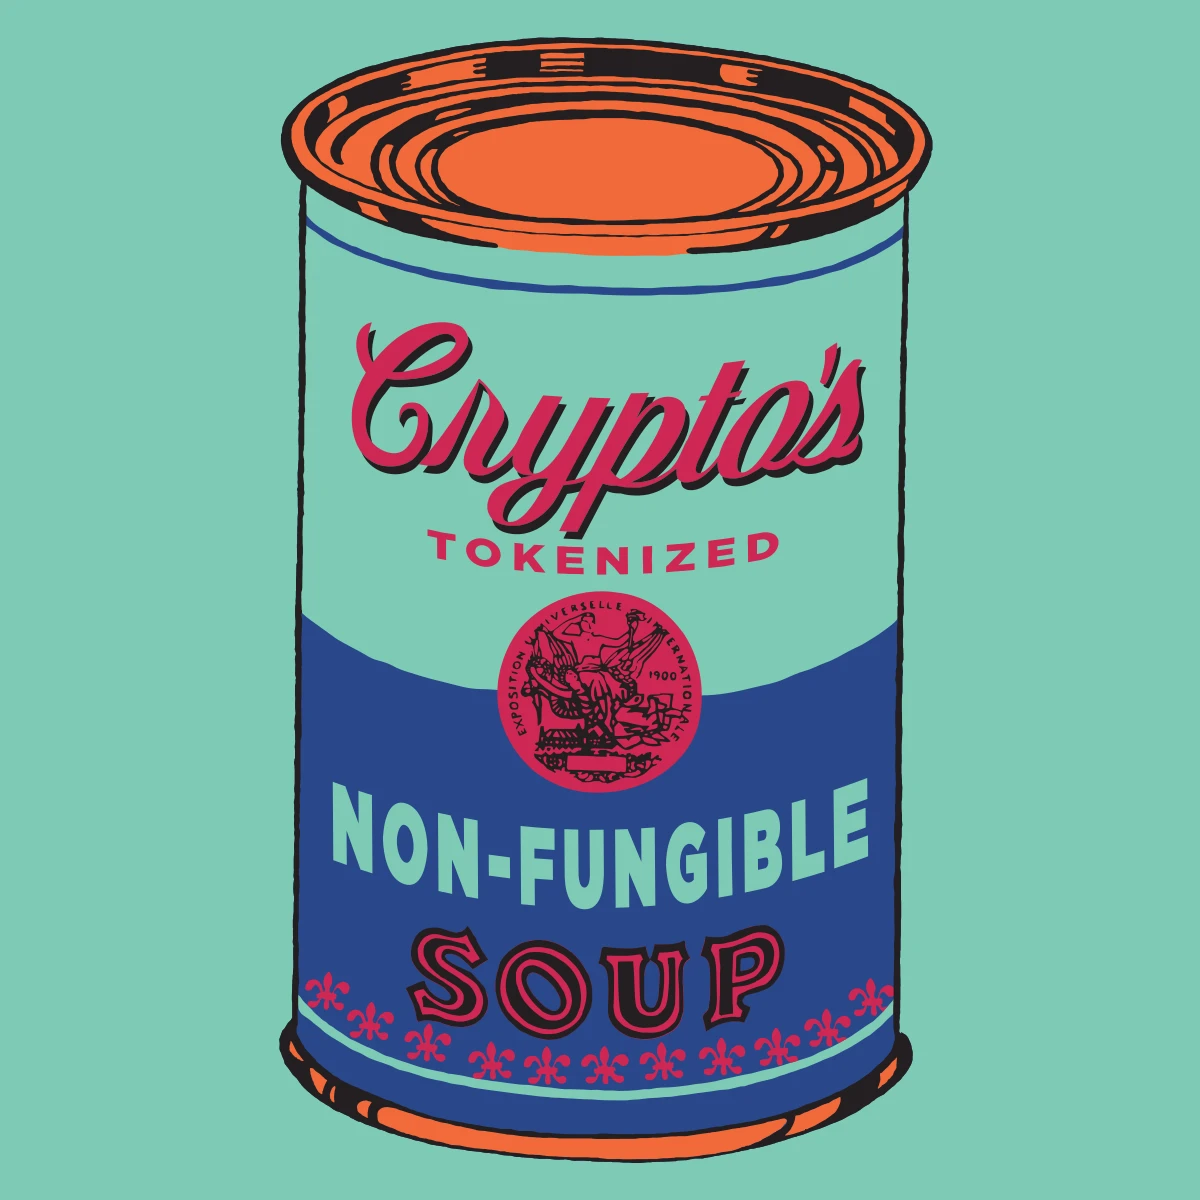 Non-Fungible Soup #0131